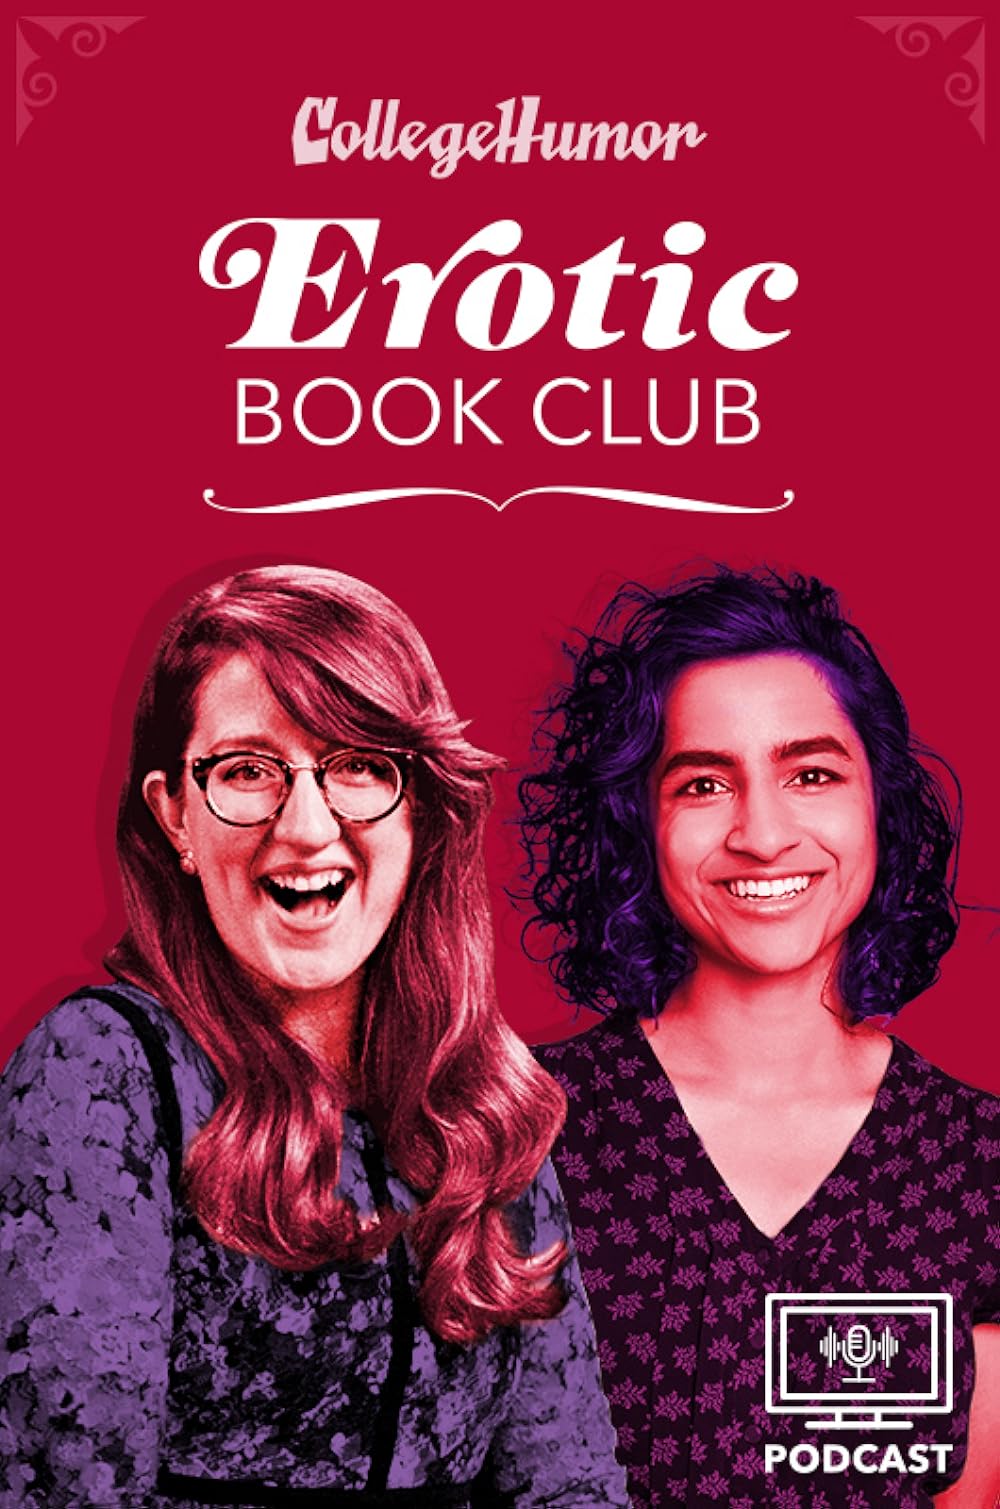 Erotic Book Club